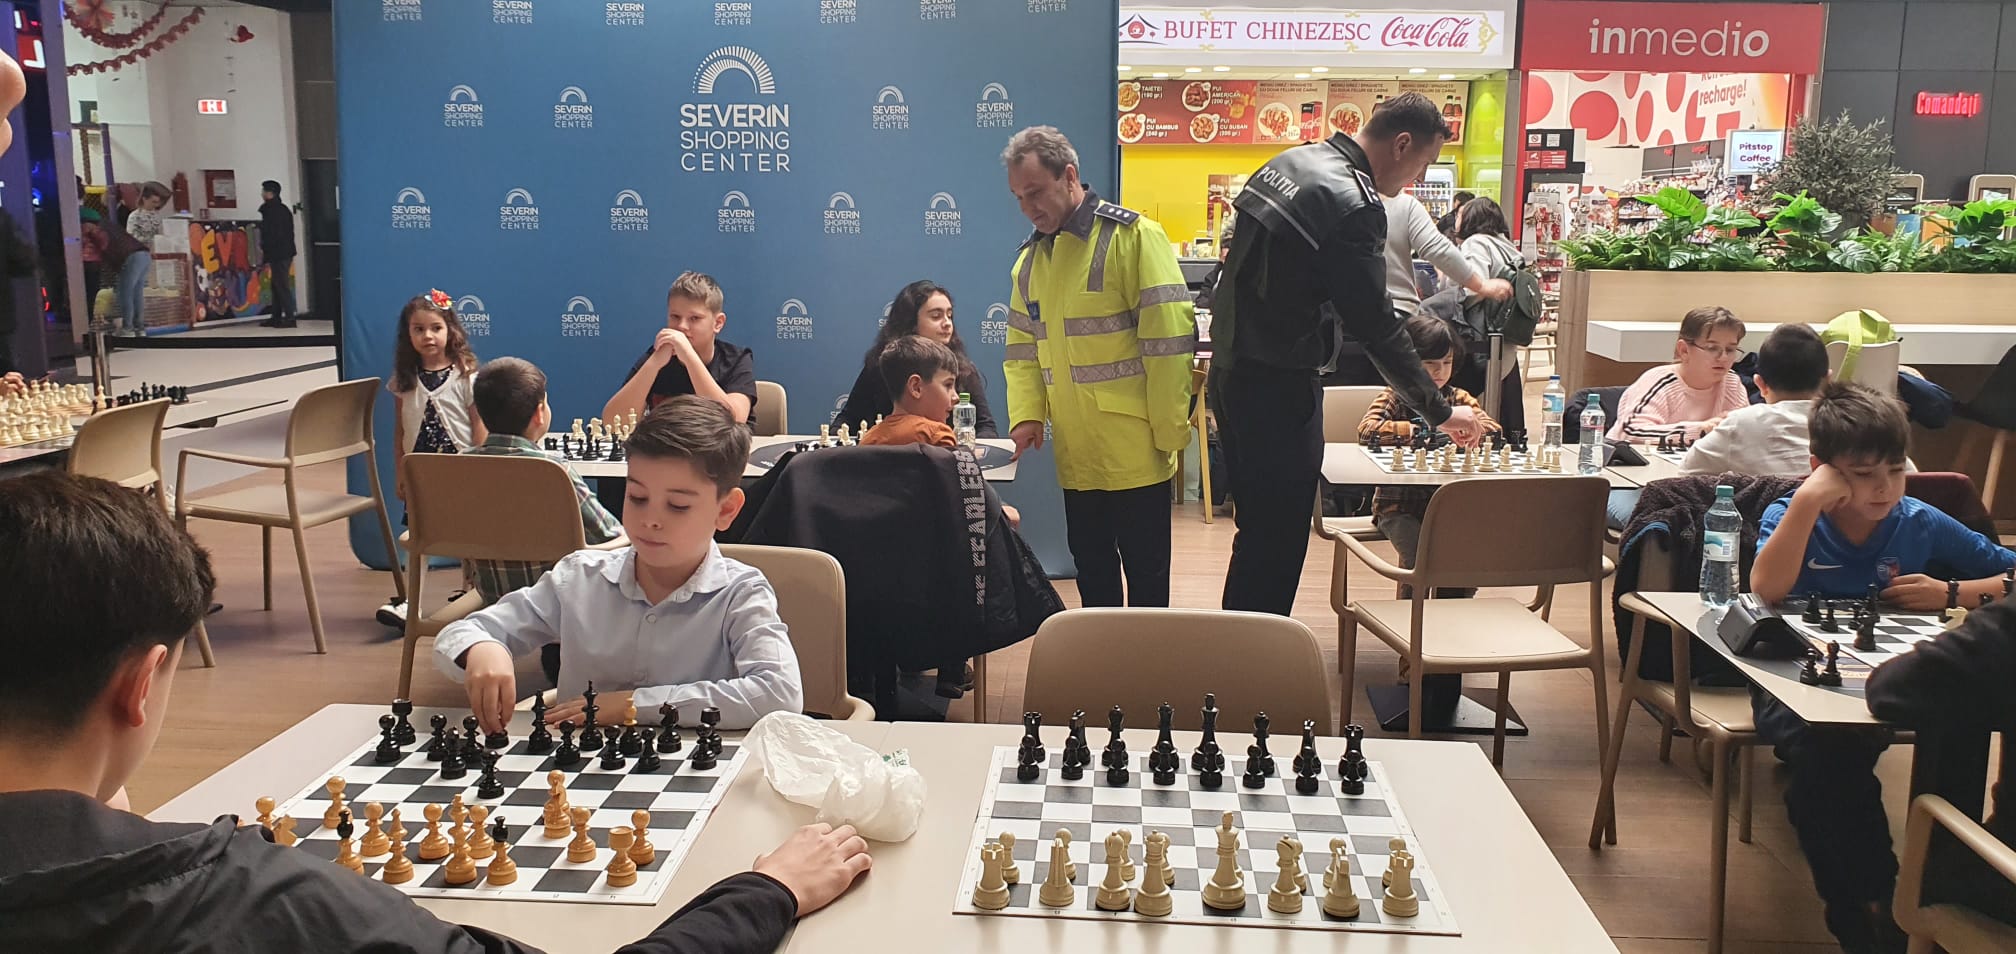 Polițiștii mehedințeni în colaborare cu Șah Club Drobeta au organizat un concurs de șah